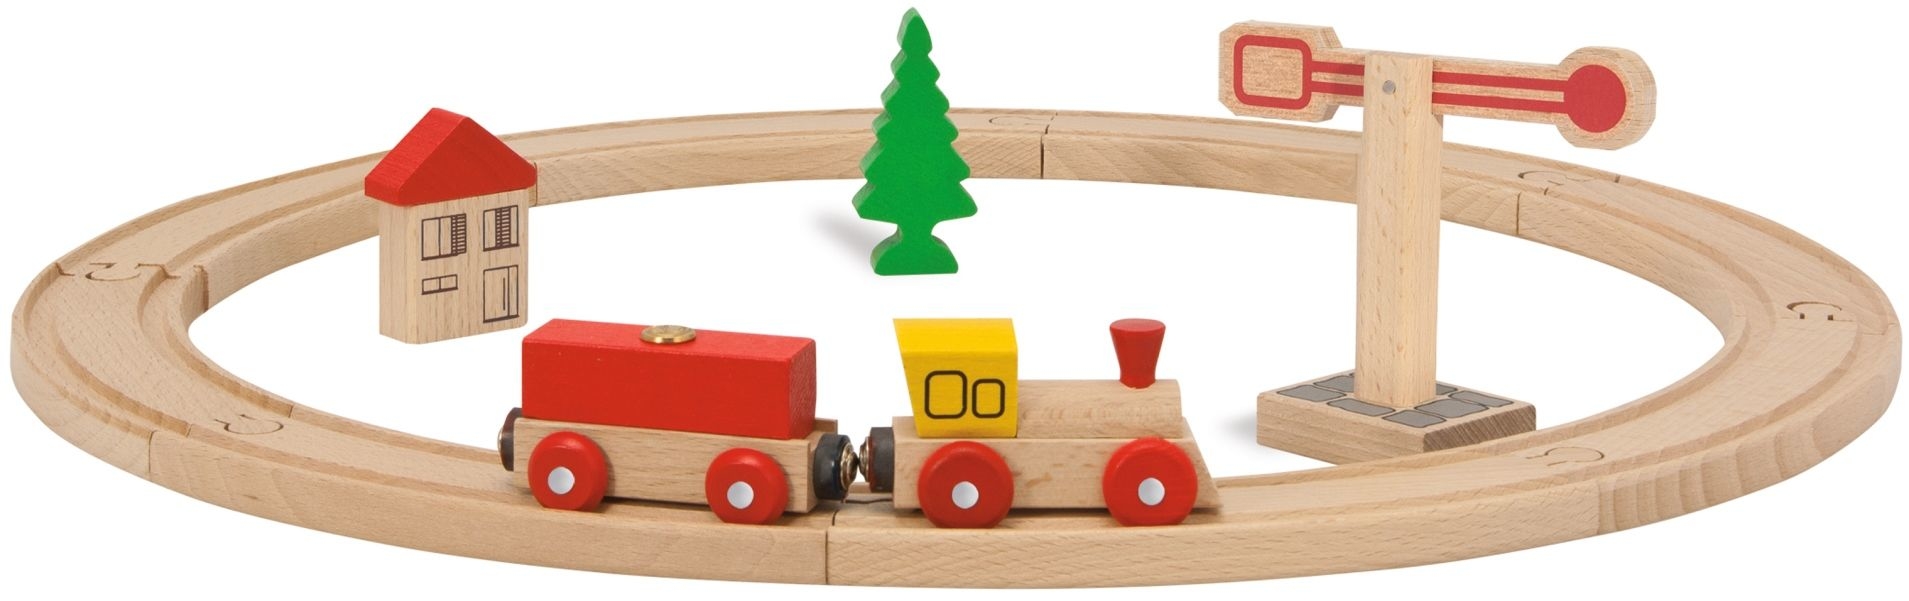 Eichhorn drewniana kolejka dla dzieci tor ko³owy 15 elementów